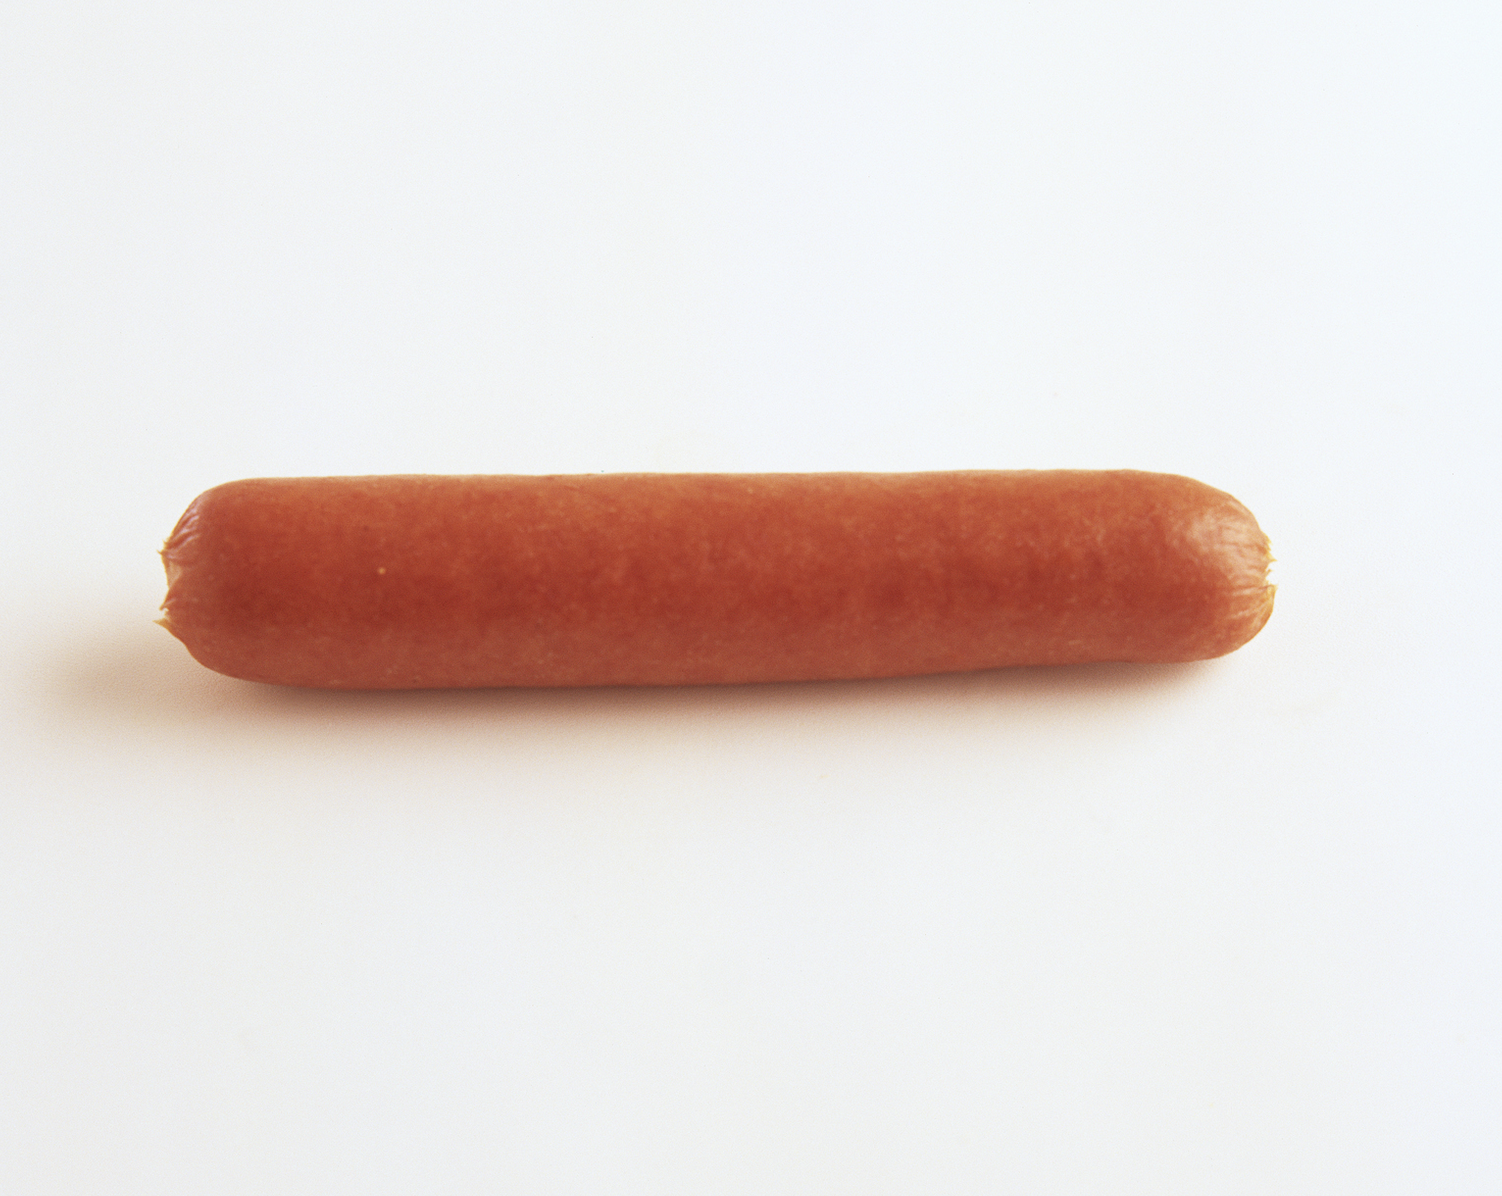 a single hot dog